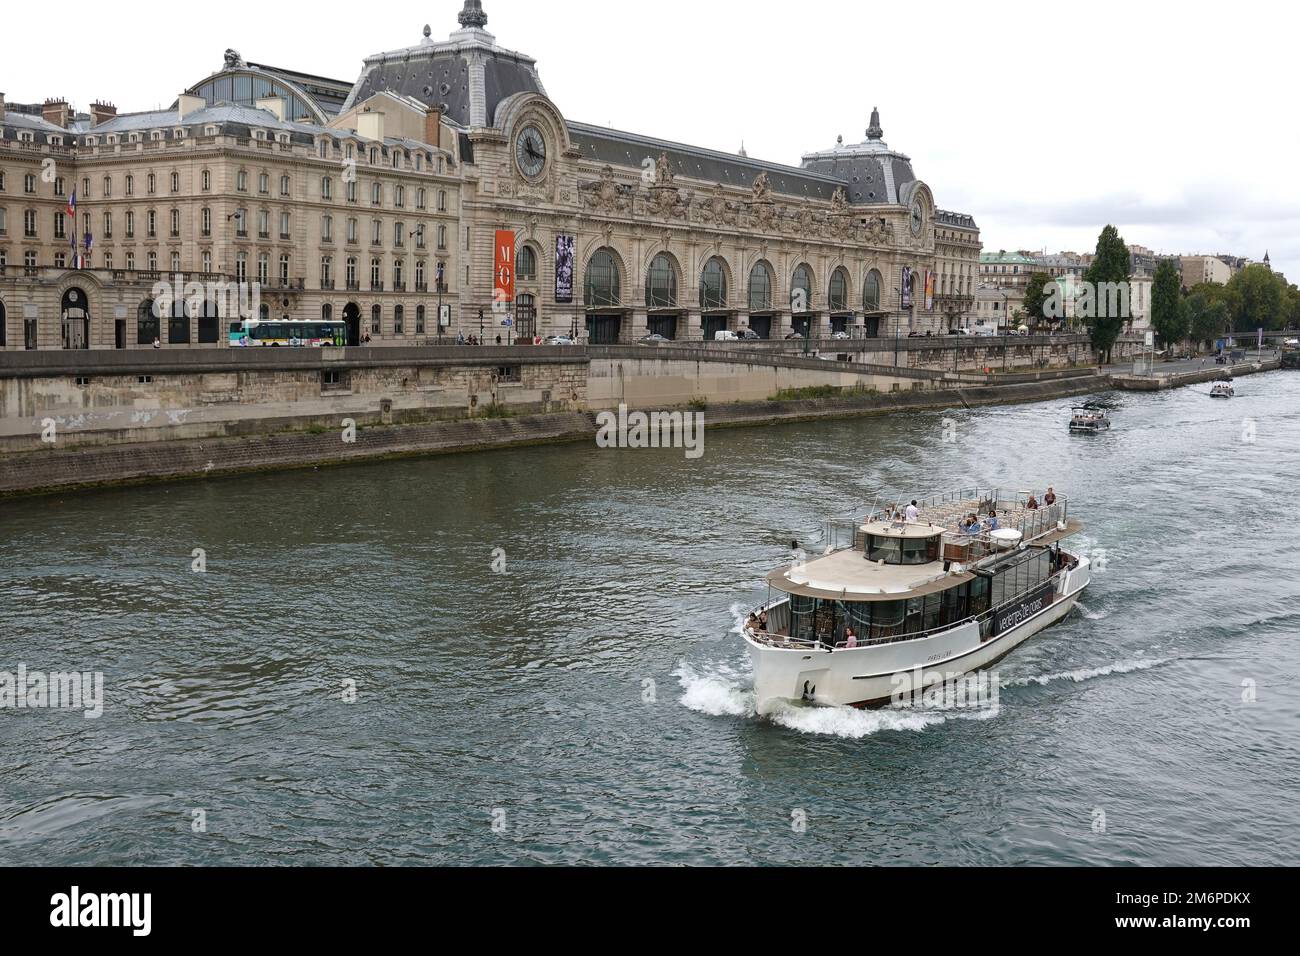 Francia, París, Musee d'Orsay y el río Sena, barcos turísticos que navegan por el río Sena. Foto © Fabio Mazzarella/Sintesi/Alamy Foto de archivo Foto de stock